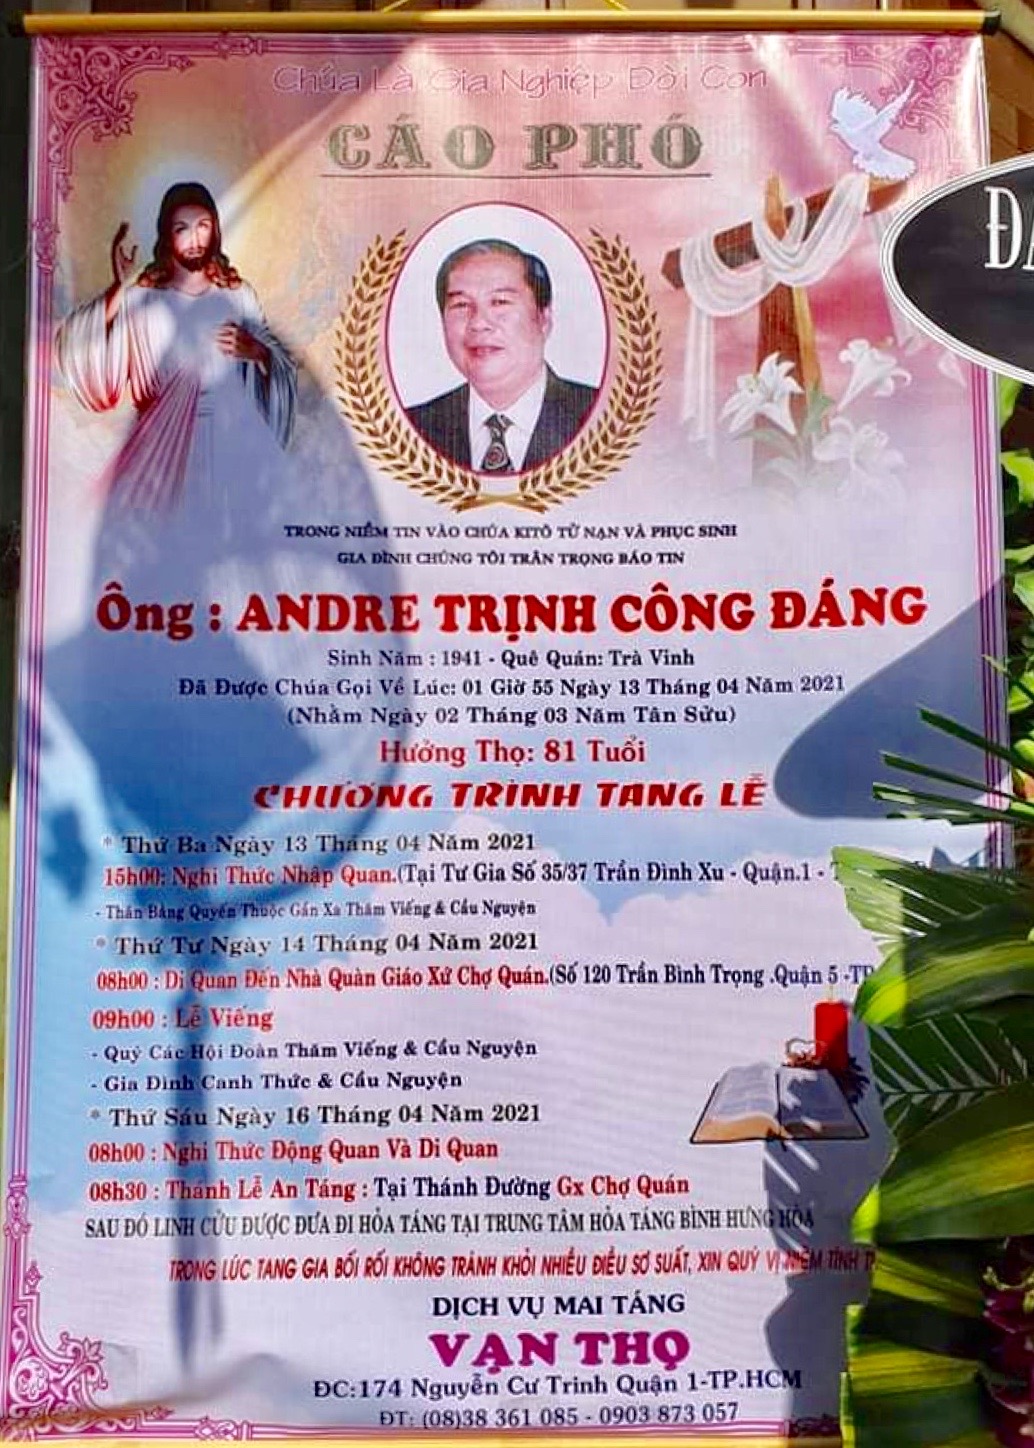 Cáo phó: thân phụ linh mục Gabriel Trịnh Công Chánh qua đời 13-4-2021, lễ An táng 8g30 thứ Sáu 16-4-2021 tại Gx. Chợ Quán